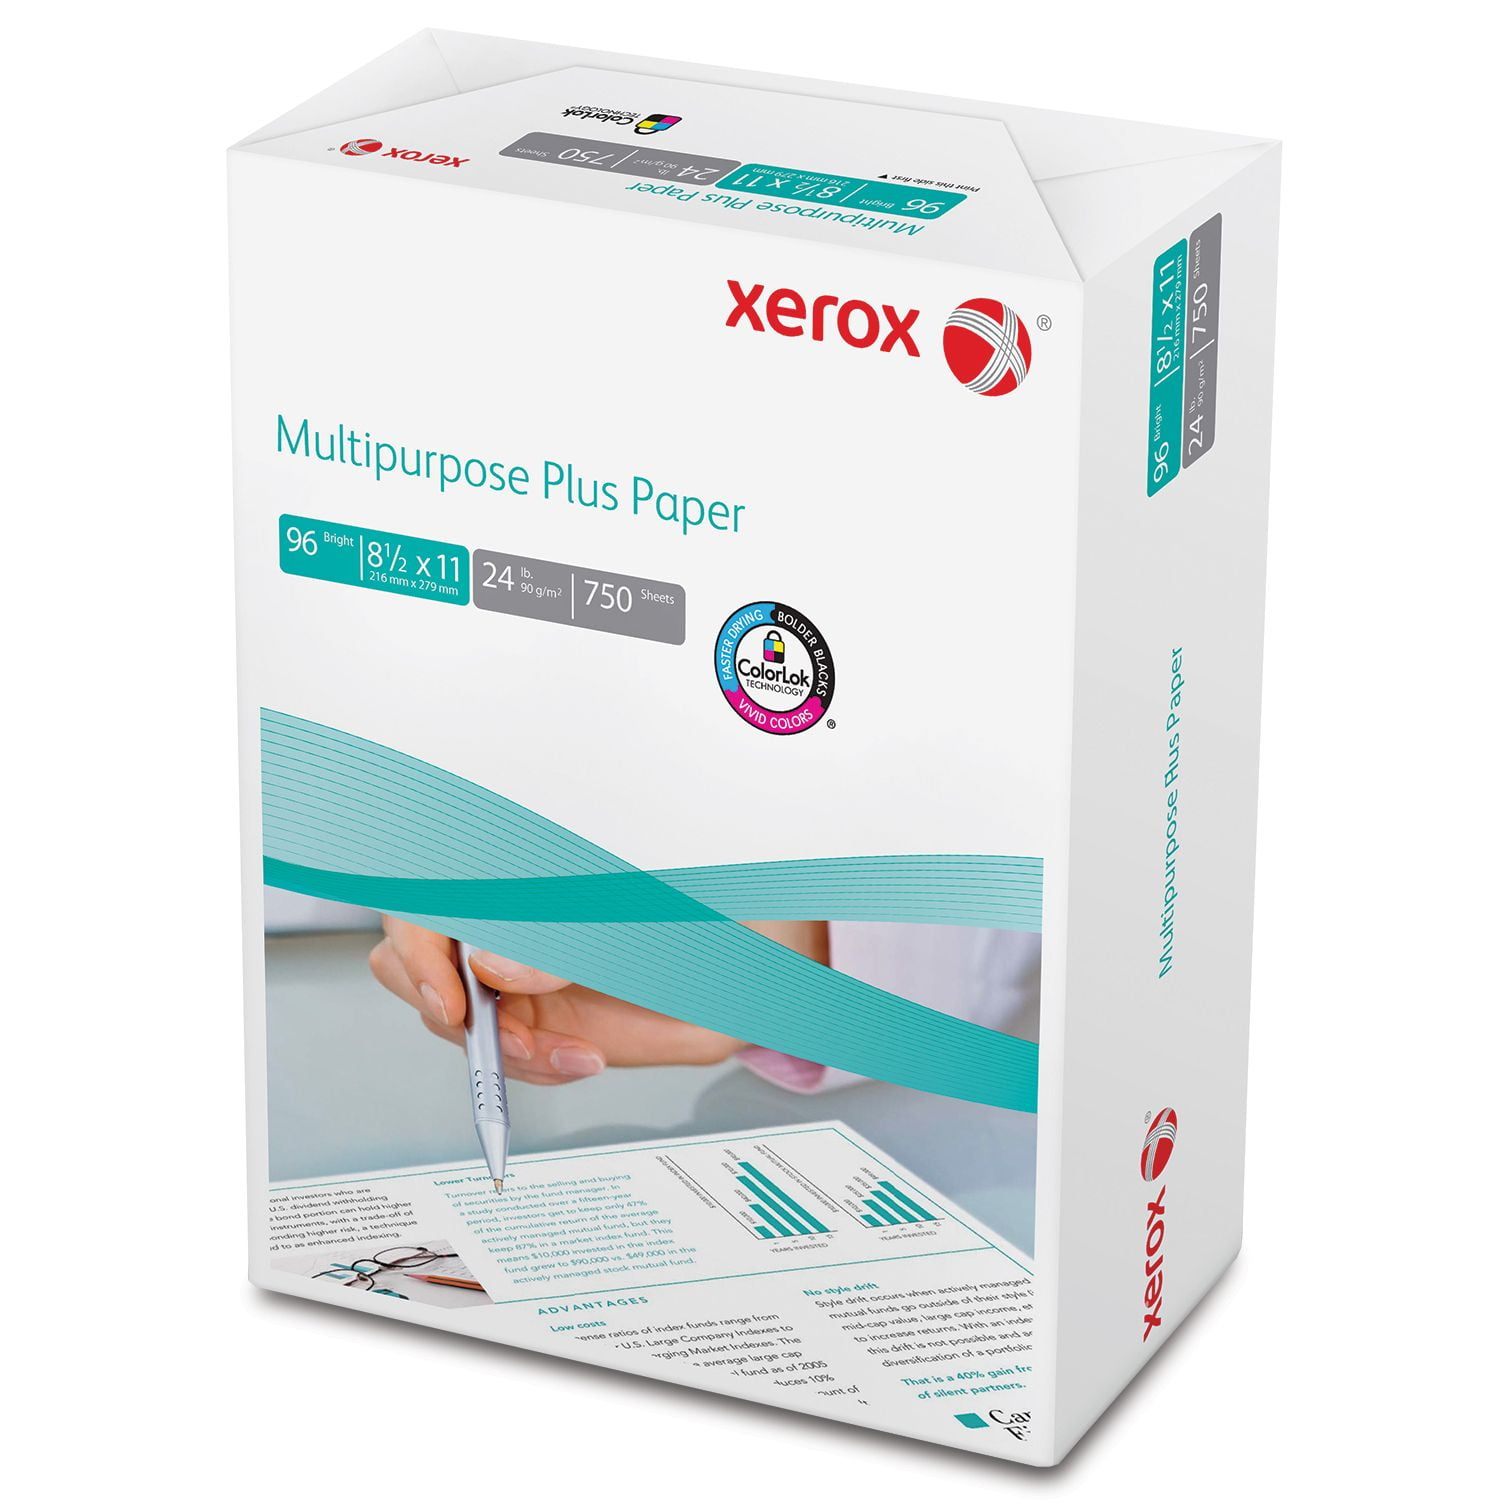 Xerox Multipurpose Plus Paper 24lb 96 Bright 8 1 2 X 11